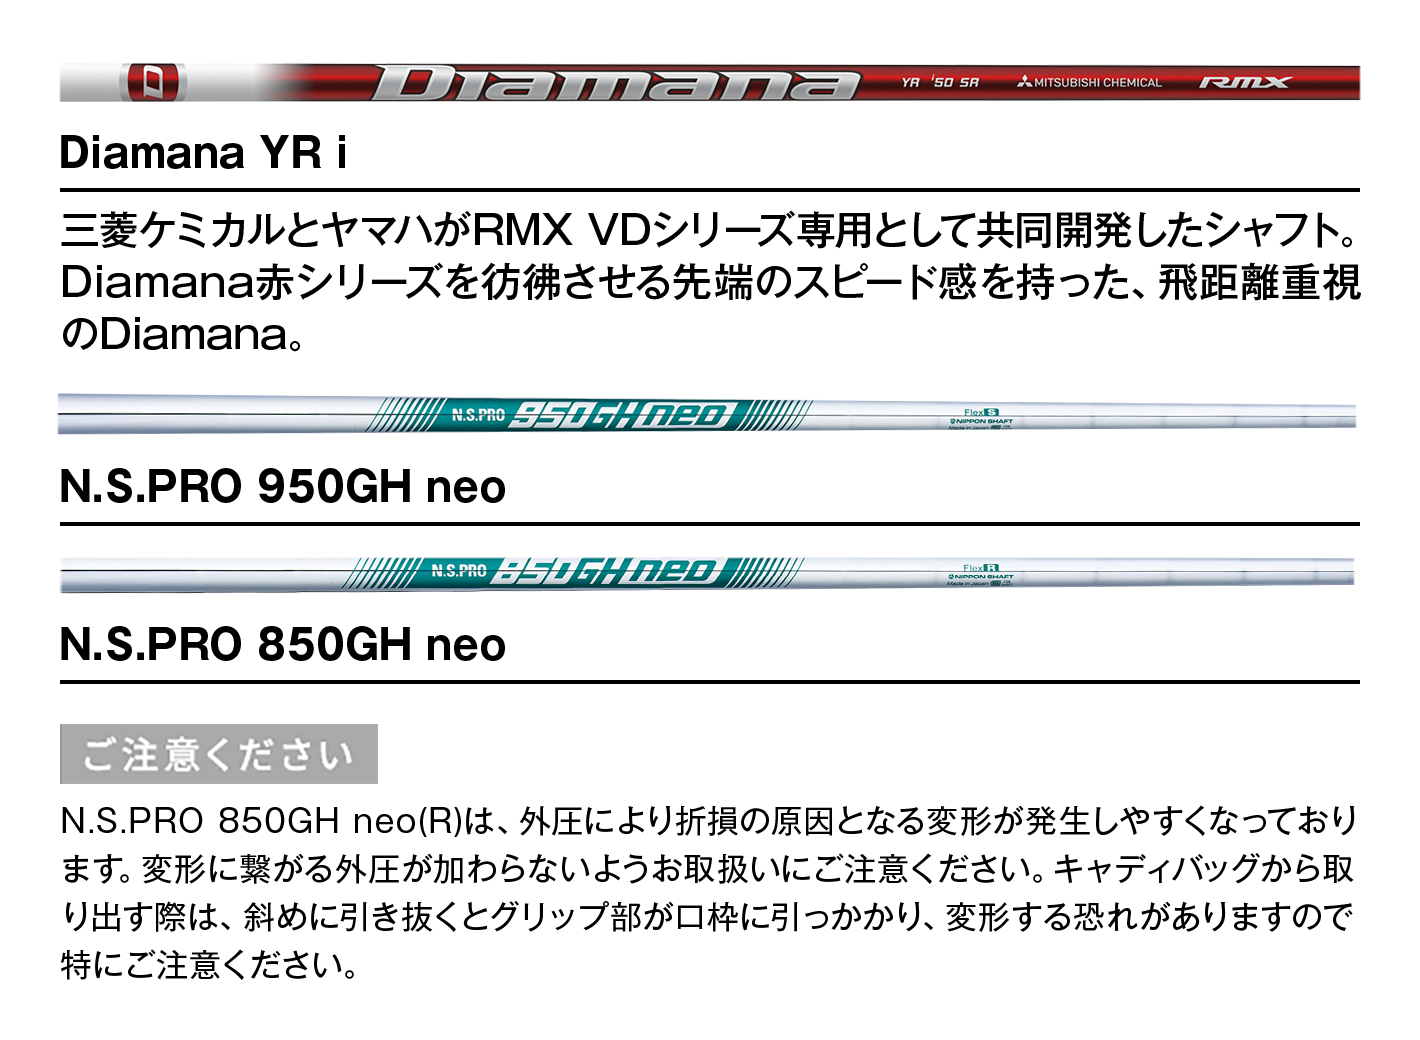 Diamana YR i：三菱ケミカルとヤマハがRMX VDシリーズ専用として共同開発したシャフト。Diamana赤シリーズを彷彿させる先端のスピード感を持った、飛距離重視のDiamana。　｜　N.S.PRO 950GH neo　｜　N.S.PRO 850GH neo　【ご注意ください】N.S.PRO 850GH neo(R)は、外圧により折損の原因となる変形が発生しやすくなっております。変形に繋がる外圧が加わらないようお取扱いにご注意ください。キャディバッグから取り出す際は、斜めに引き抜くとグリップ部が口枠に引っかかり、変形する恐れがありますので特にご注意ください。